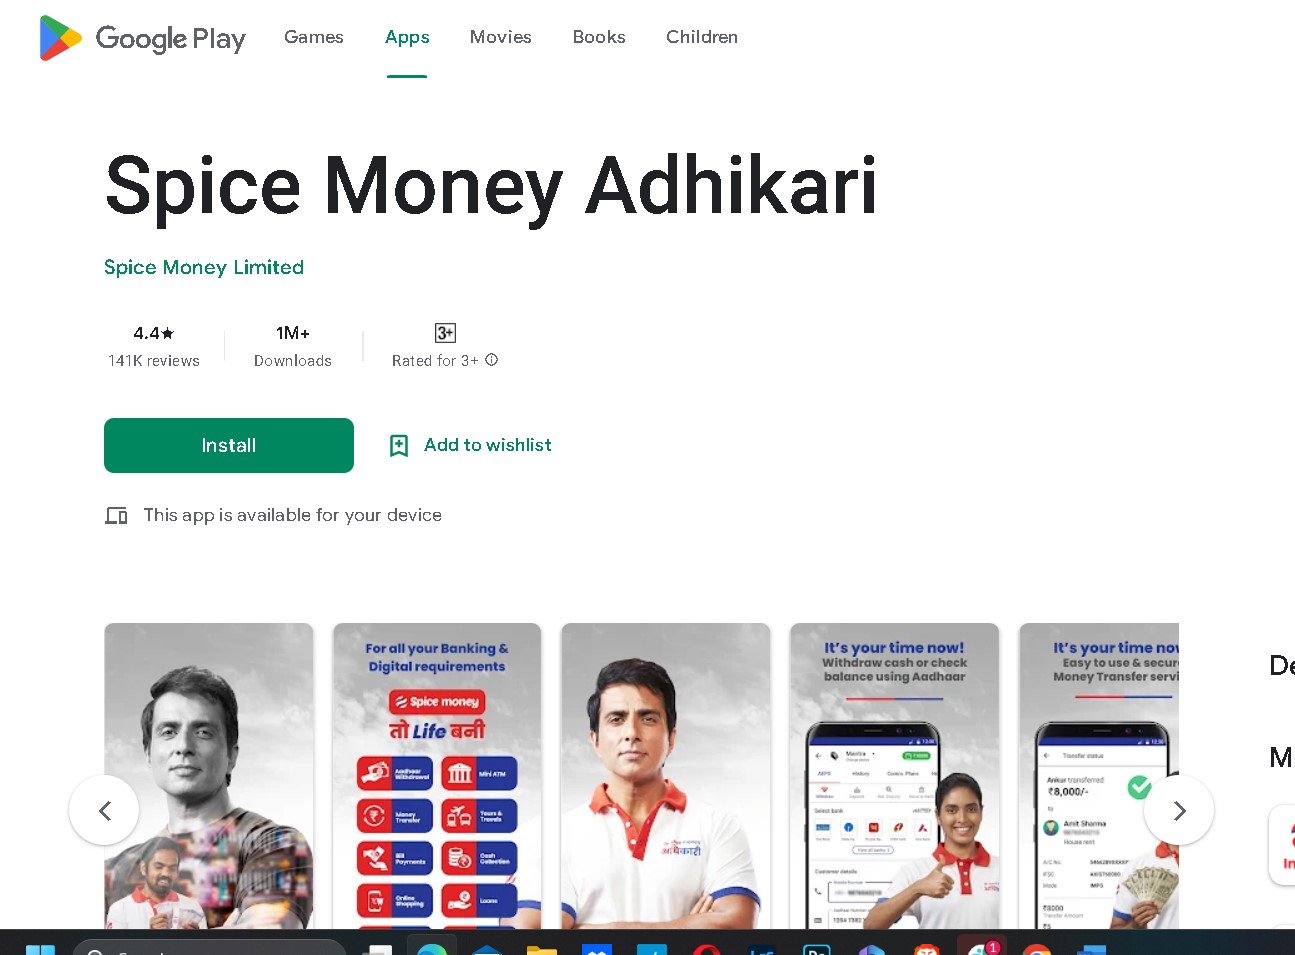  adhikari app download